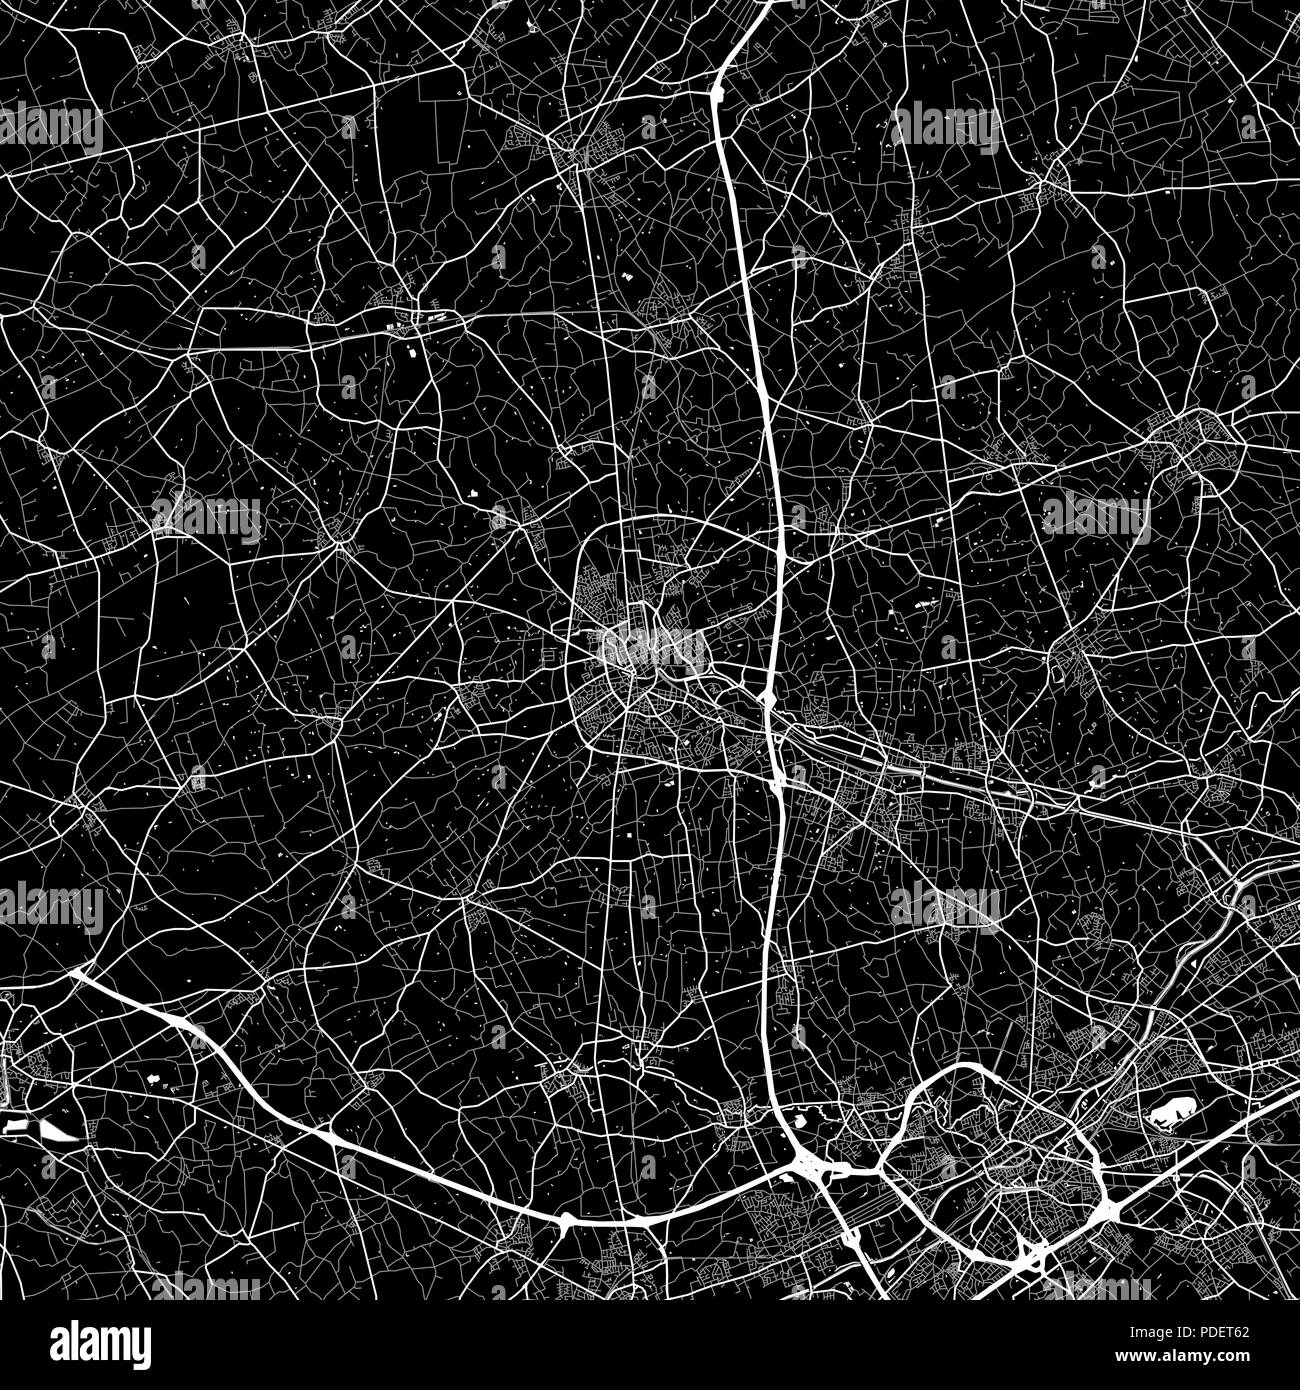 Mapa de la zona de Roeselare, Bélgica. Fondo oscuro versión para infografía y marketing. Este mapa de Roeselare, Región Flamenca, contiene las calles, wate Ilustración del Vector